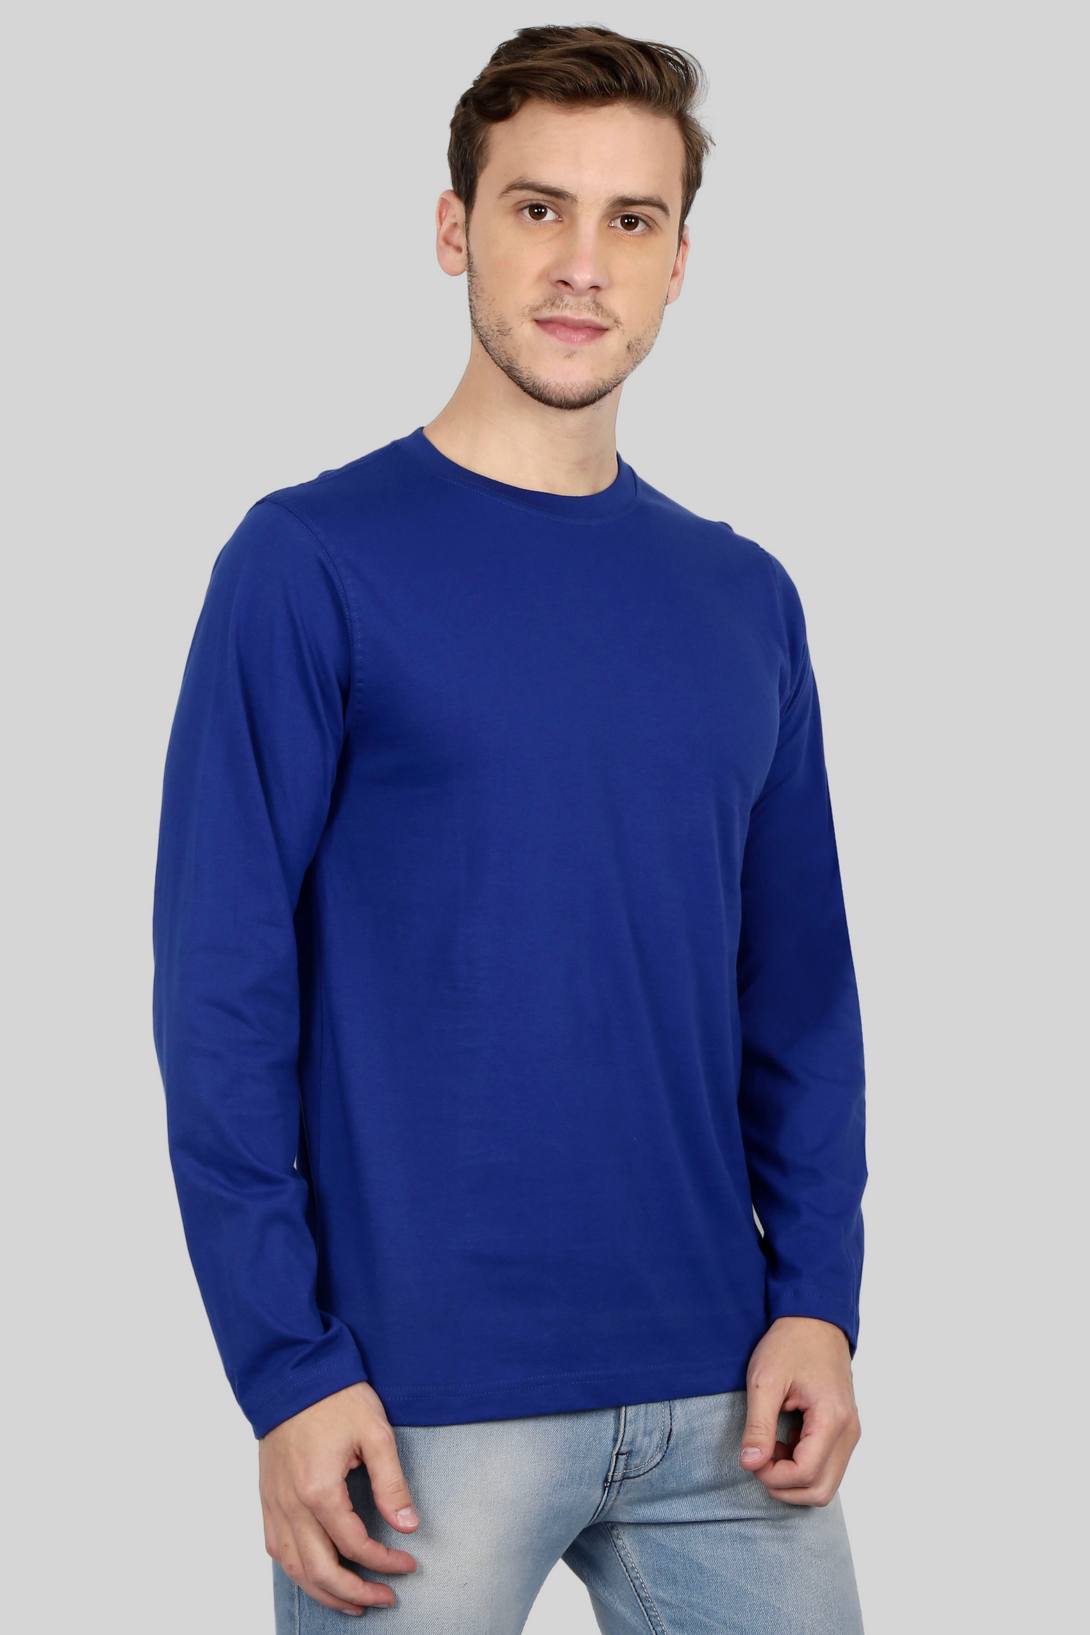 Royal Blue Full Sleeve T-Shirt For Men - WowWaves - 6